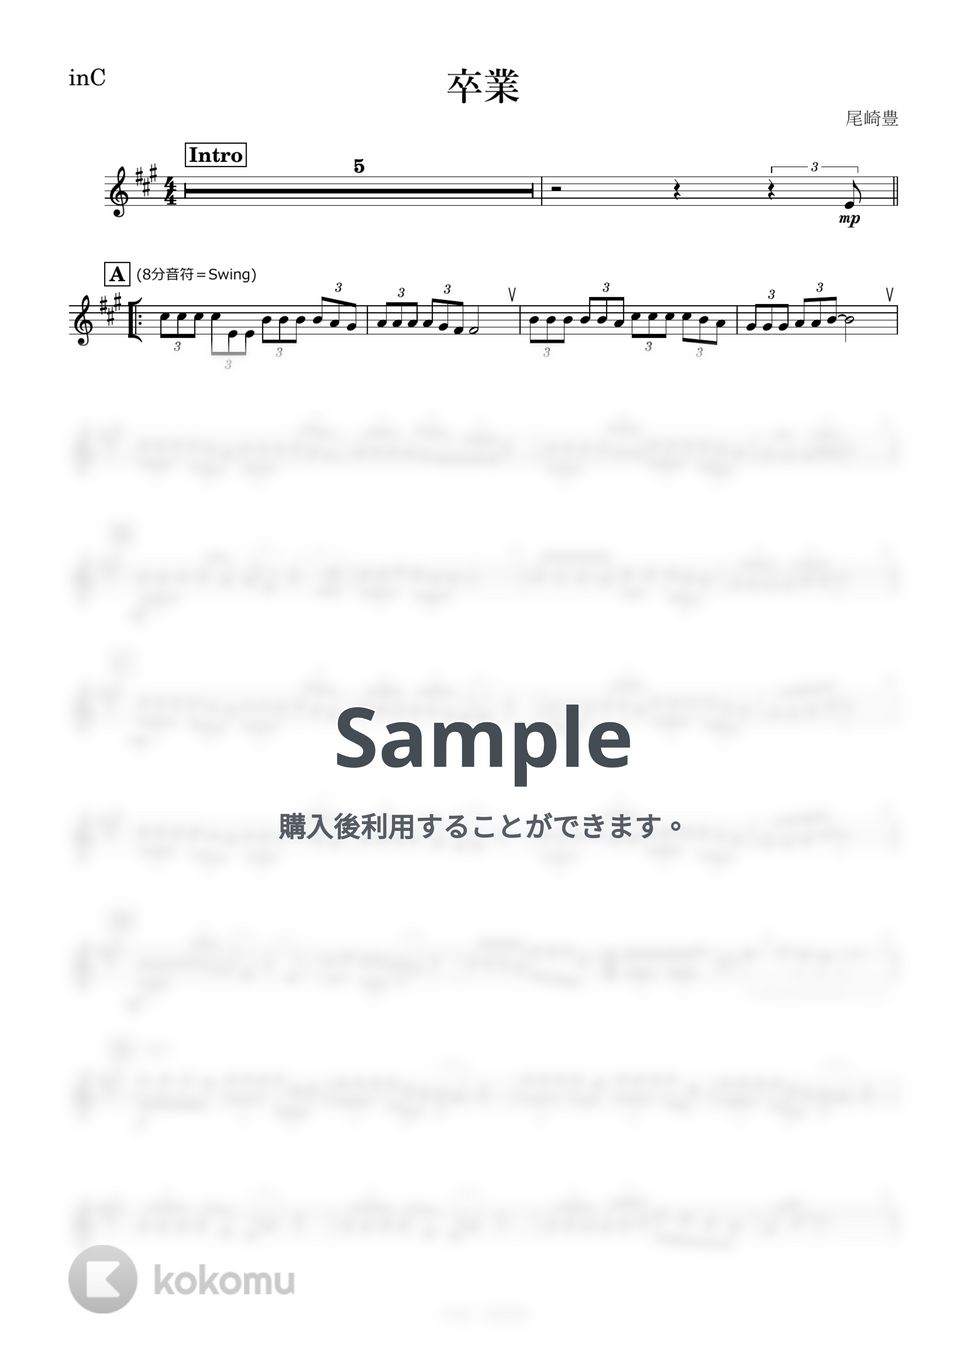 尾崎豊 - 卒業 (C) by kanamusic